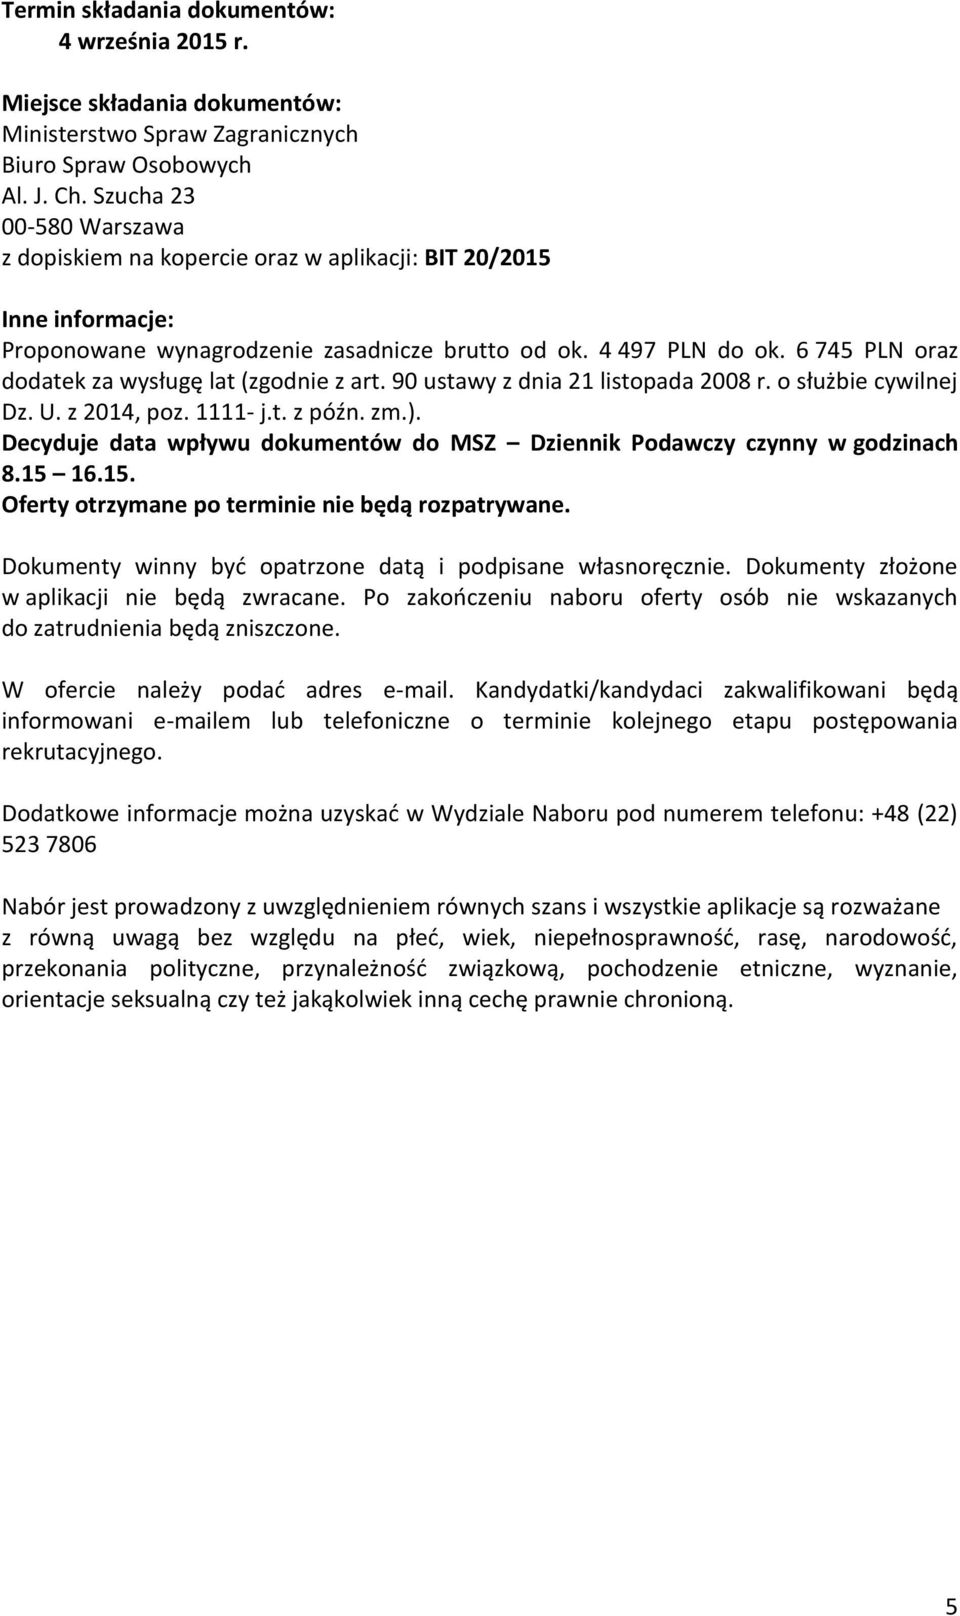 6 745 PLN oraz dodatek za wysługę lat (zgodnie z art. 90 ustawy z dnia 21 listopada 2008 r. o służbie cywilnej Dz. U. z 2014, poz. 1111- j.t. z późn. zm.).